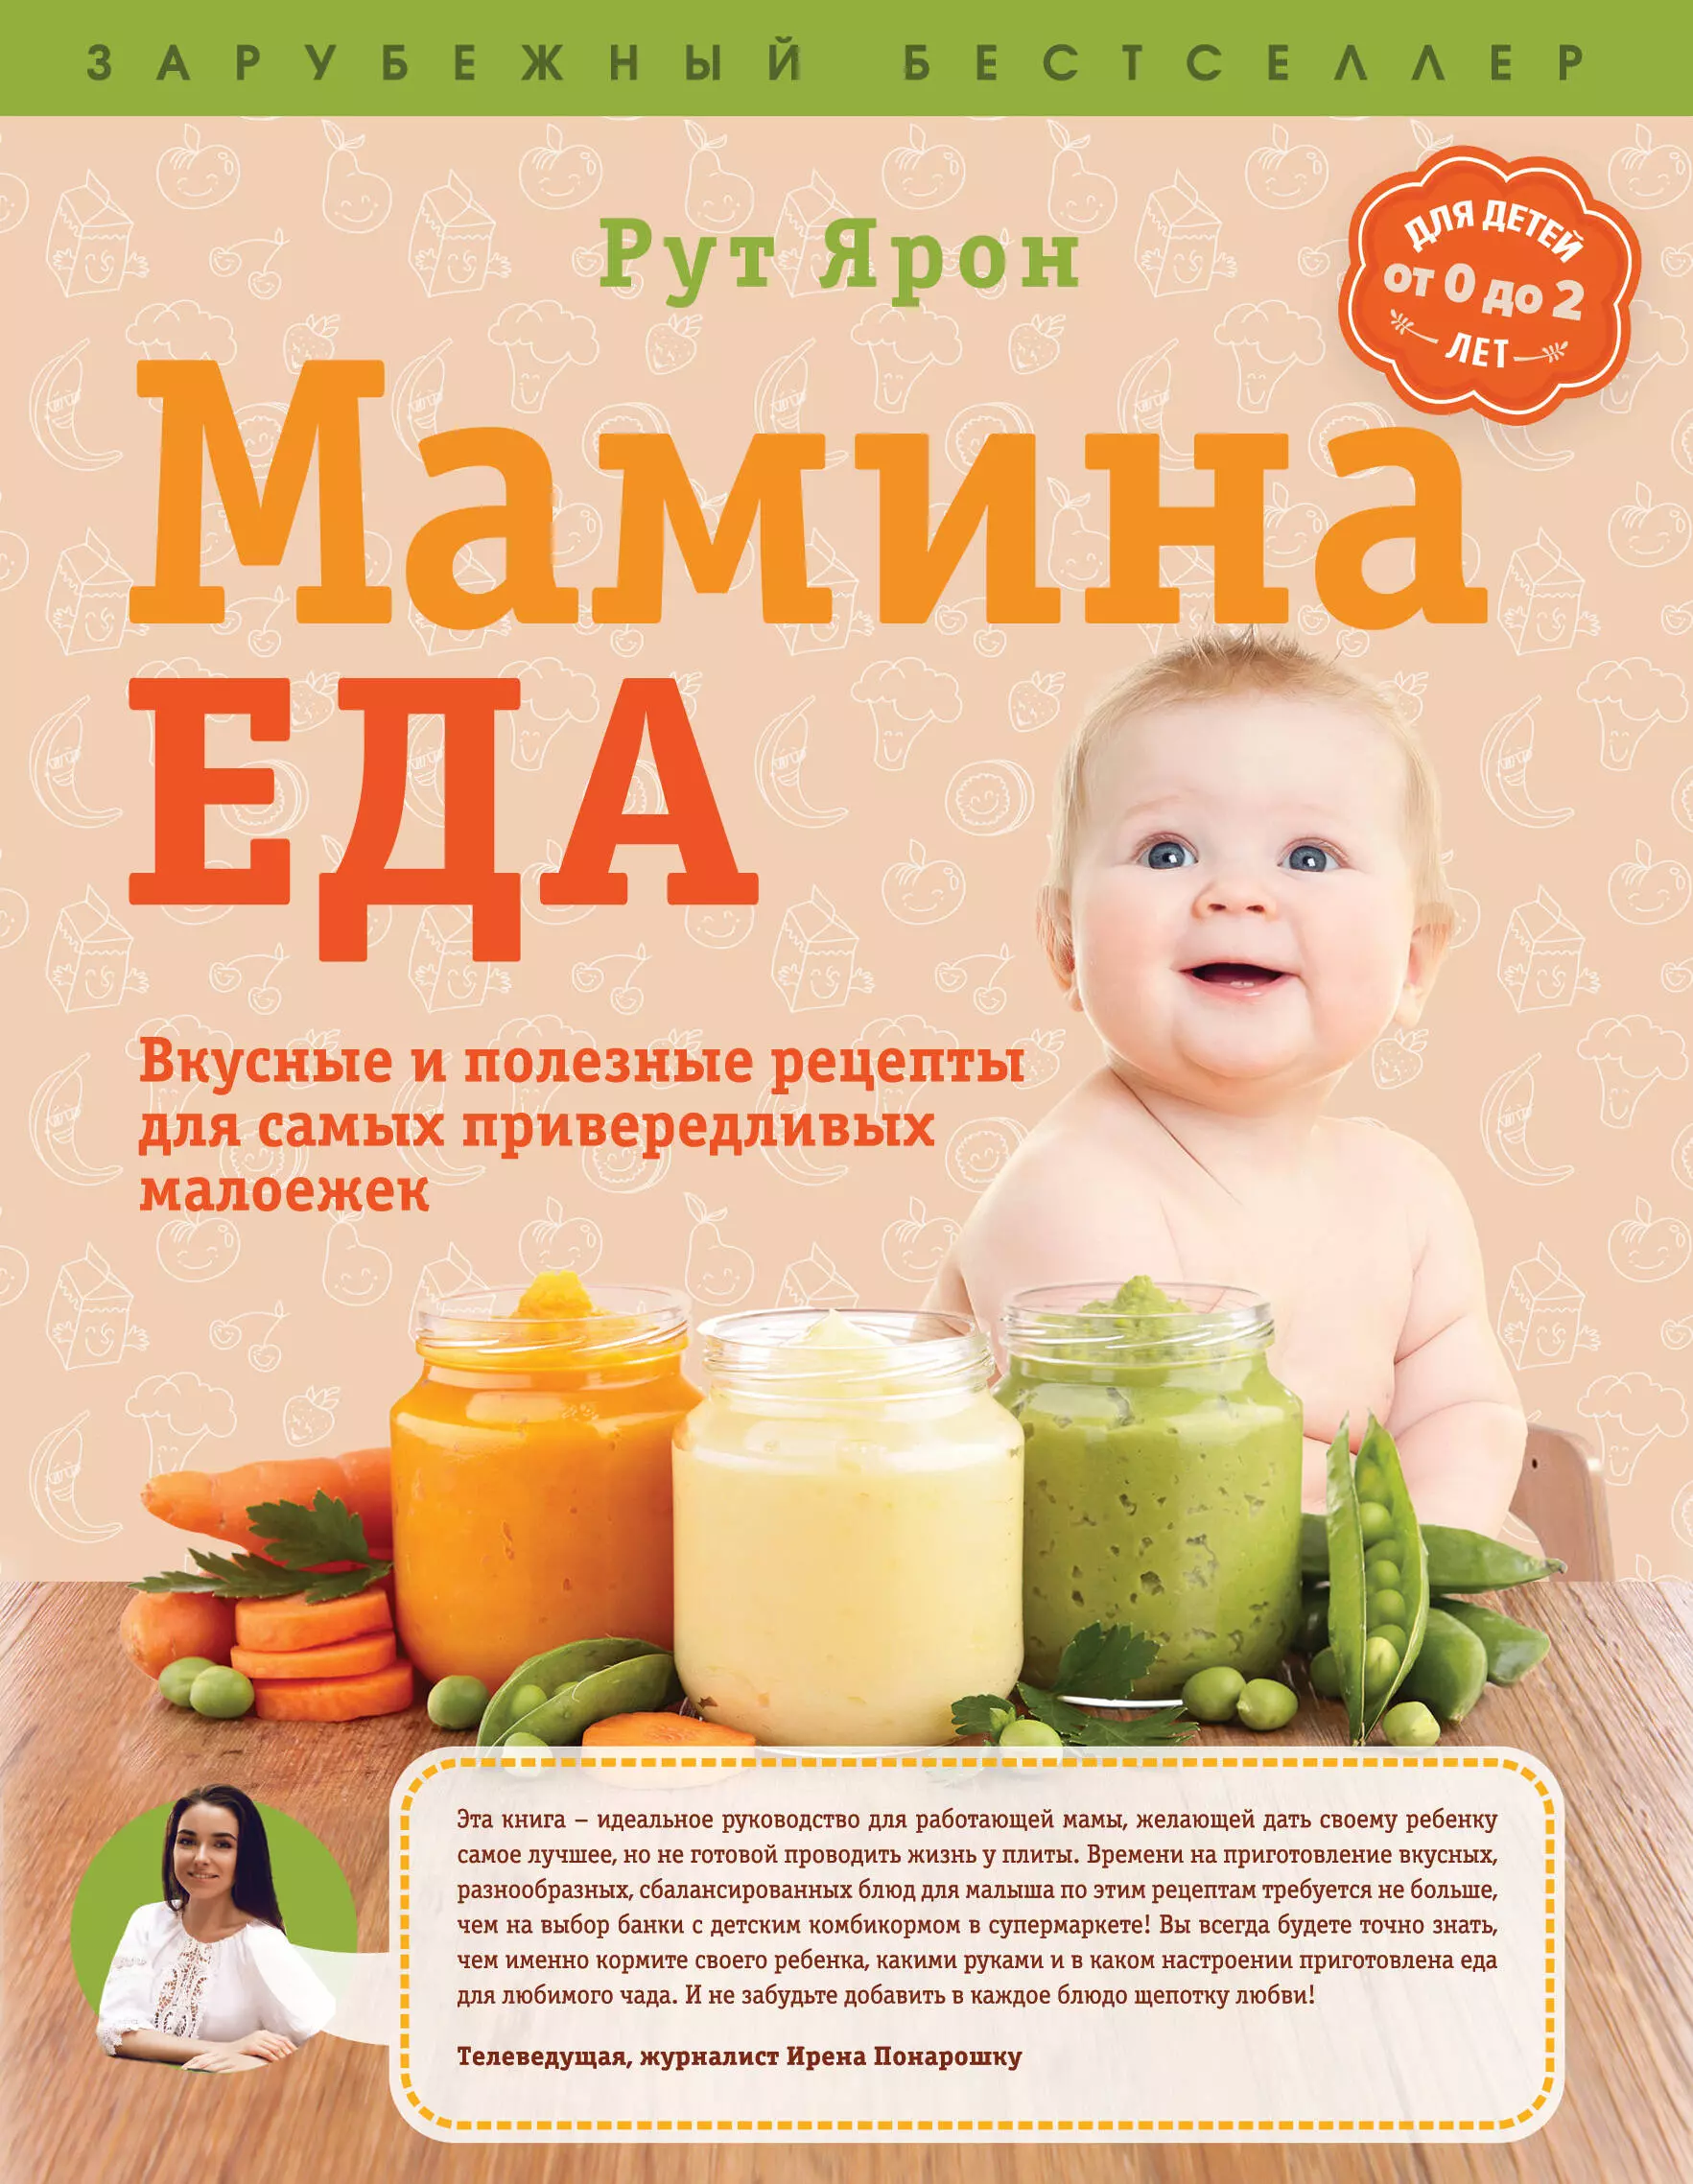 Ярон Рут - Суперпитание для вашего малыша. (ISBN 978-5-699-76429-7, новая обложка: "Мамина еда. Вкусные и полезные рецепты для самых привередливых малоежек")